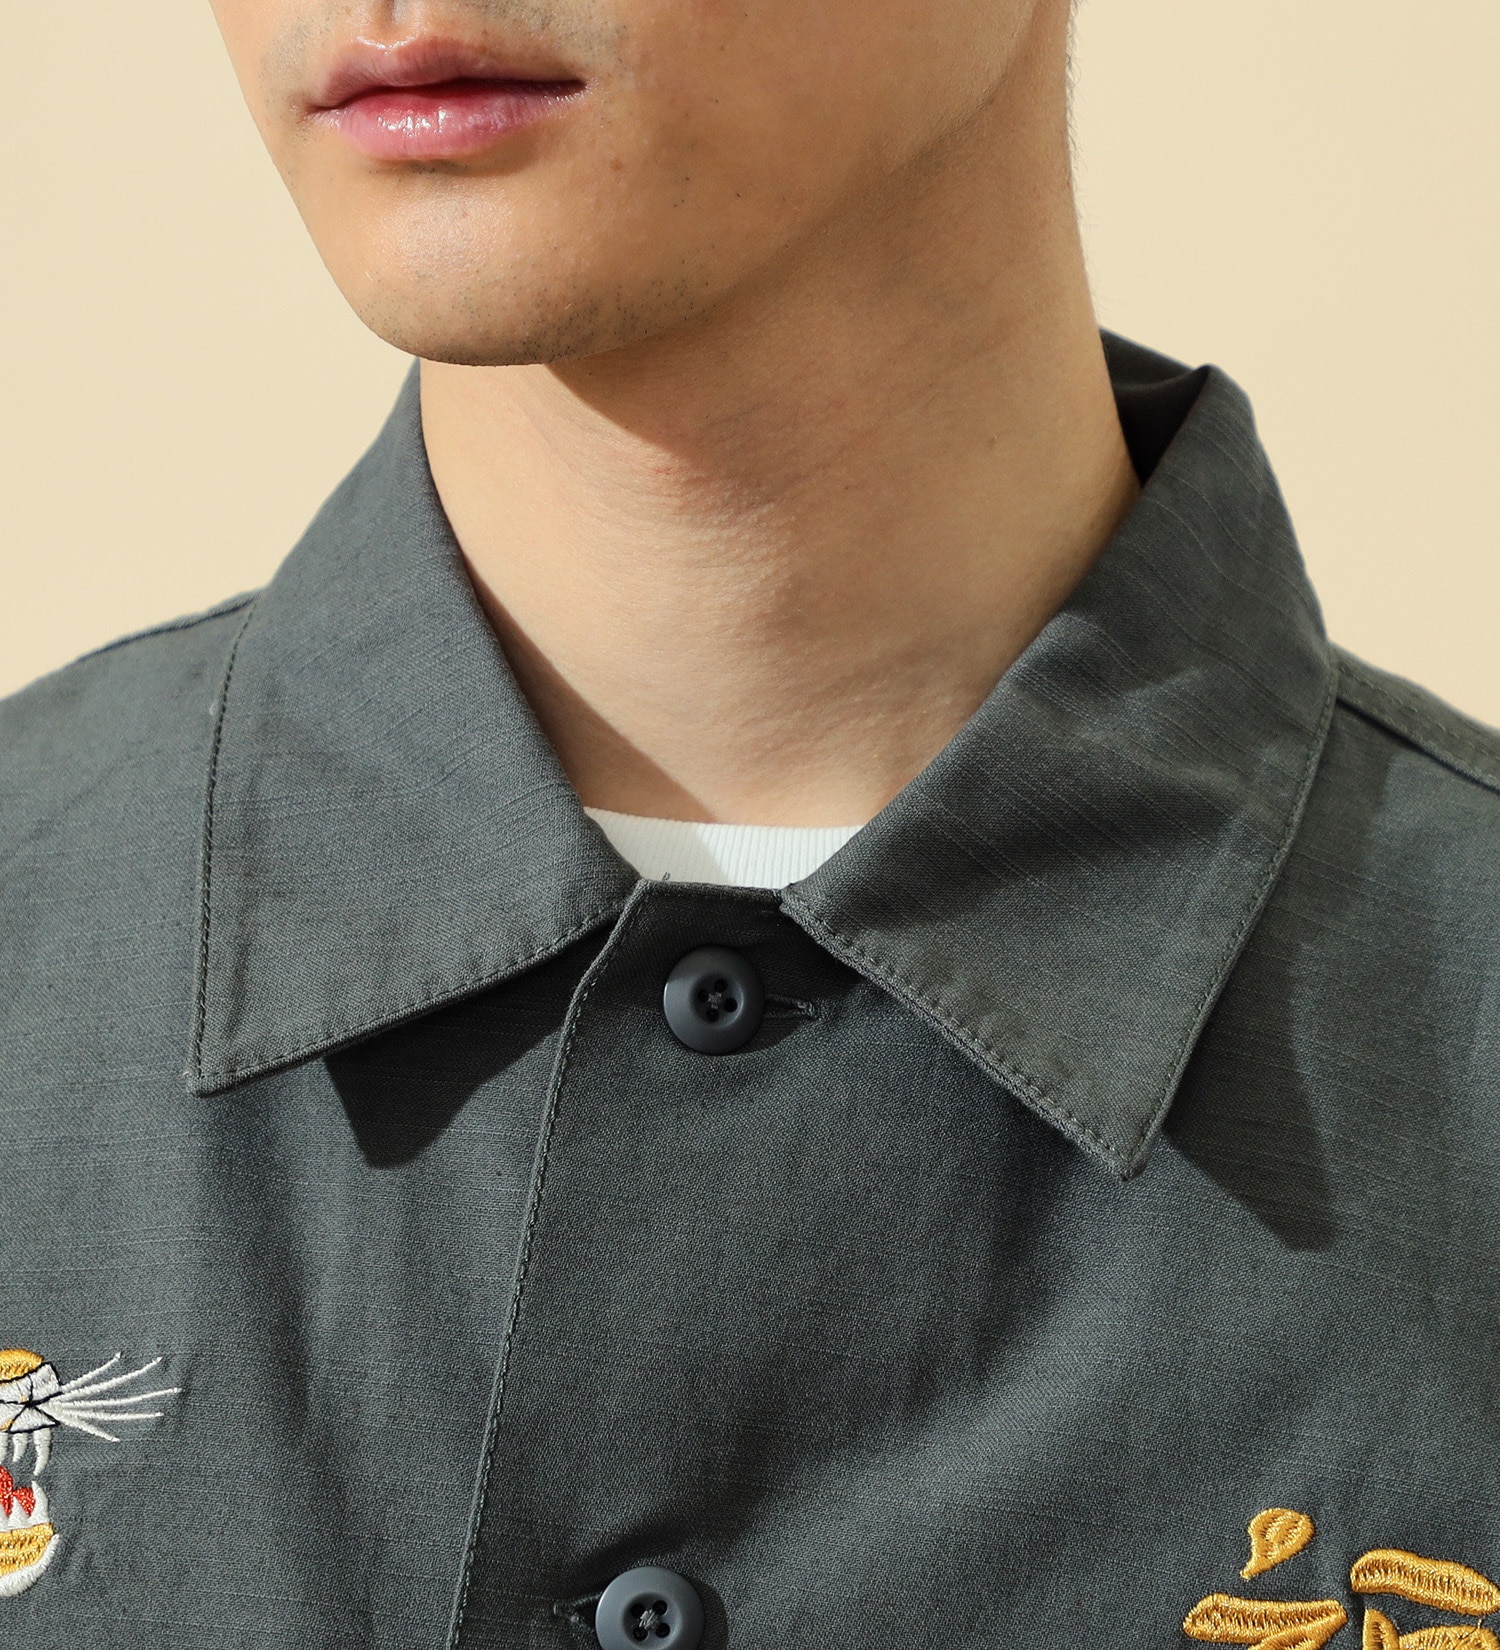 ALPHA(アルファ)のユーティリティシャツ/ベトジャン刺繍 長袖（VIETNAM）|トップス/シャツ/ブラウス/メンズ|グレー